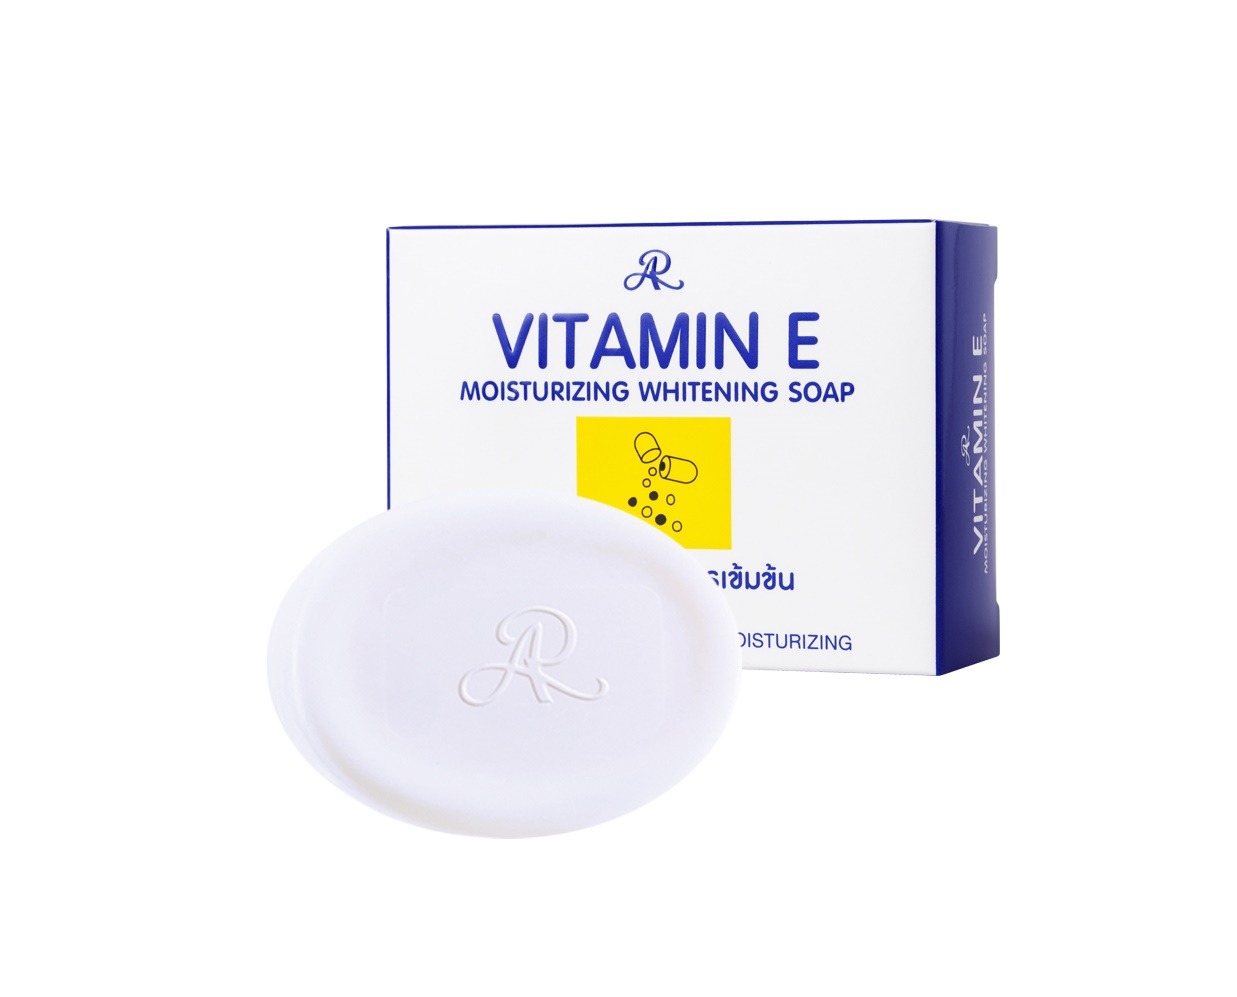 Vitamin E Moisturizing Whitening Soap